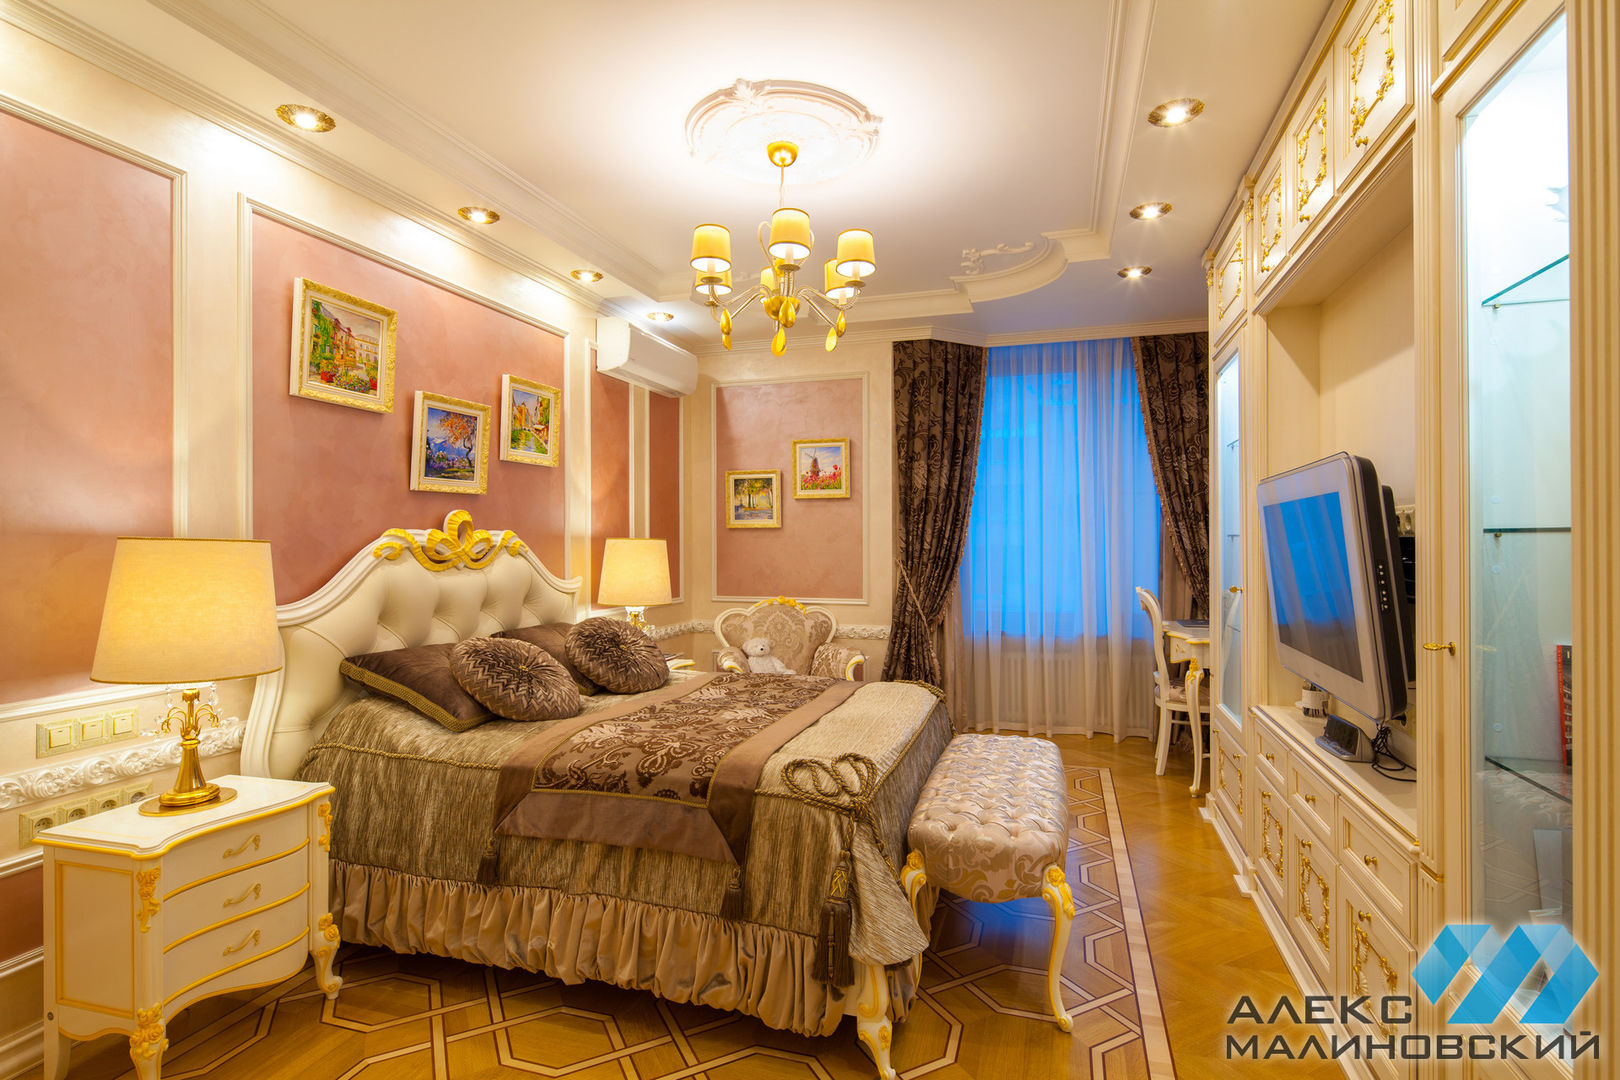 Спальня женская, ракурс 1 Александр Малиновский Спальня в классическом стиле